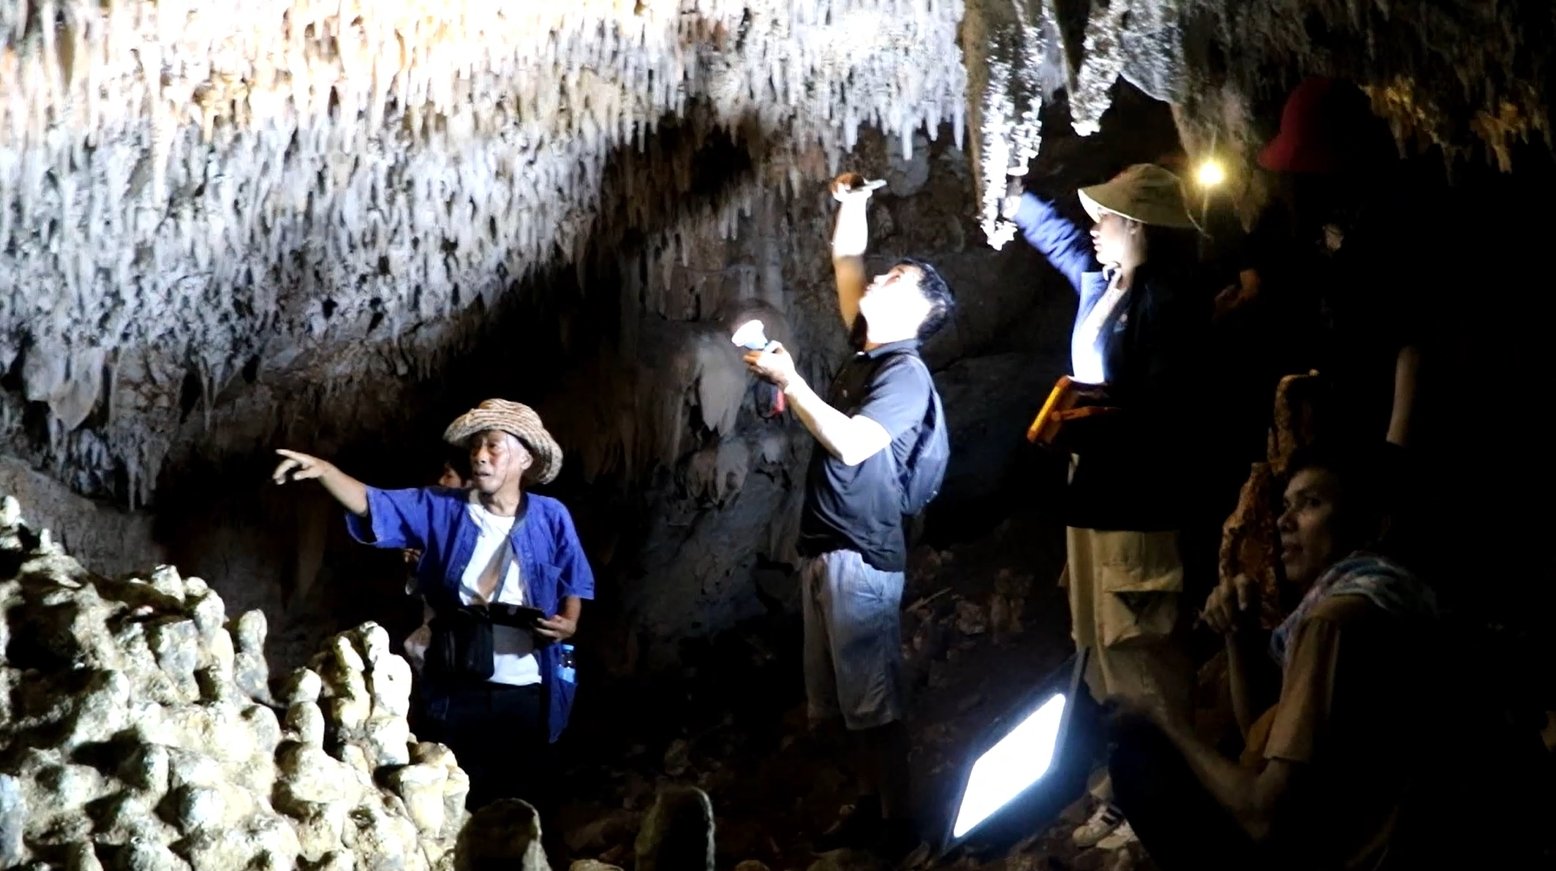 ค้นพบถ้ำใหม่ ต้องมุดเข้าไป แต่ข้างในเป็นโถงใหญ่ หินงอกหินย้อยสะท้อนแสงเหมือนคริสตัล